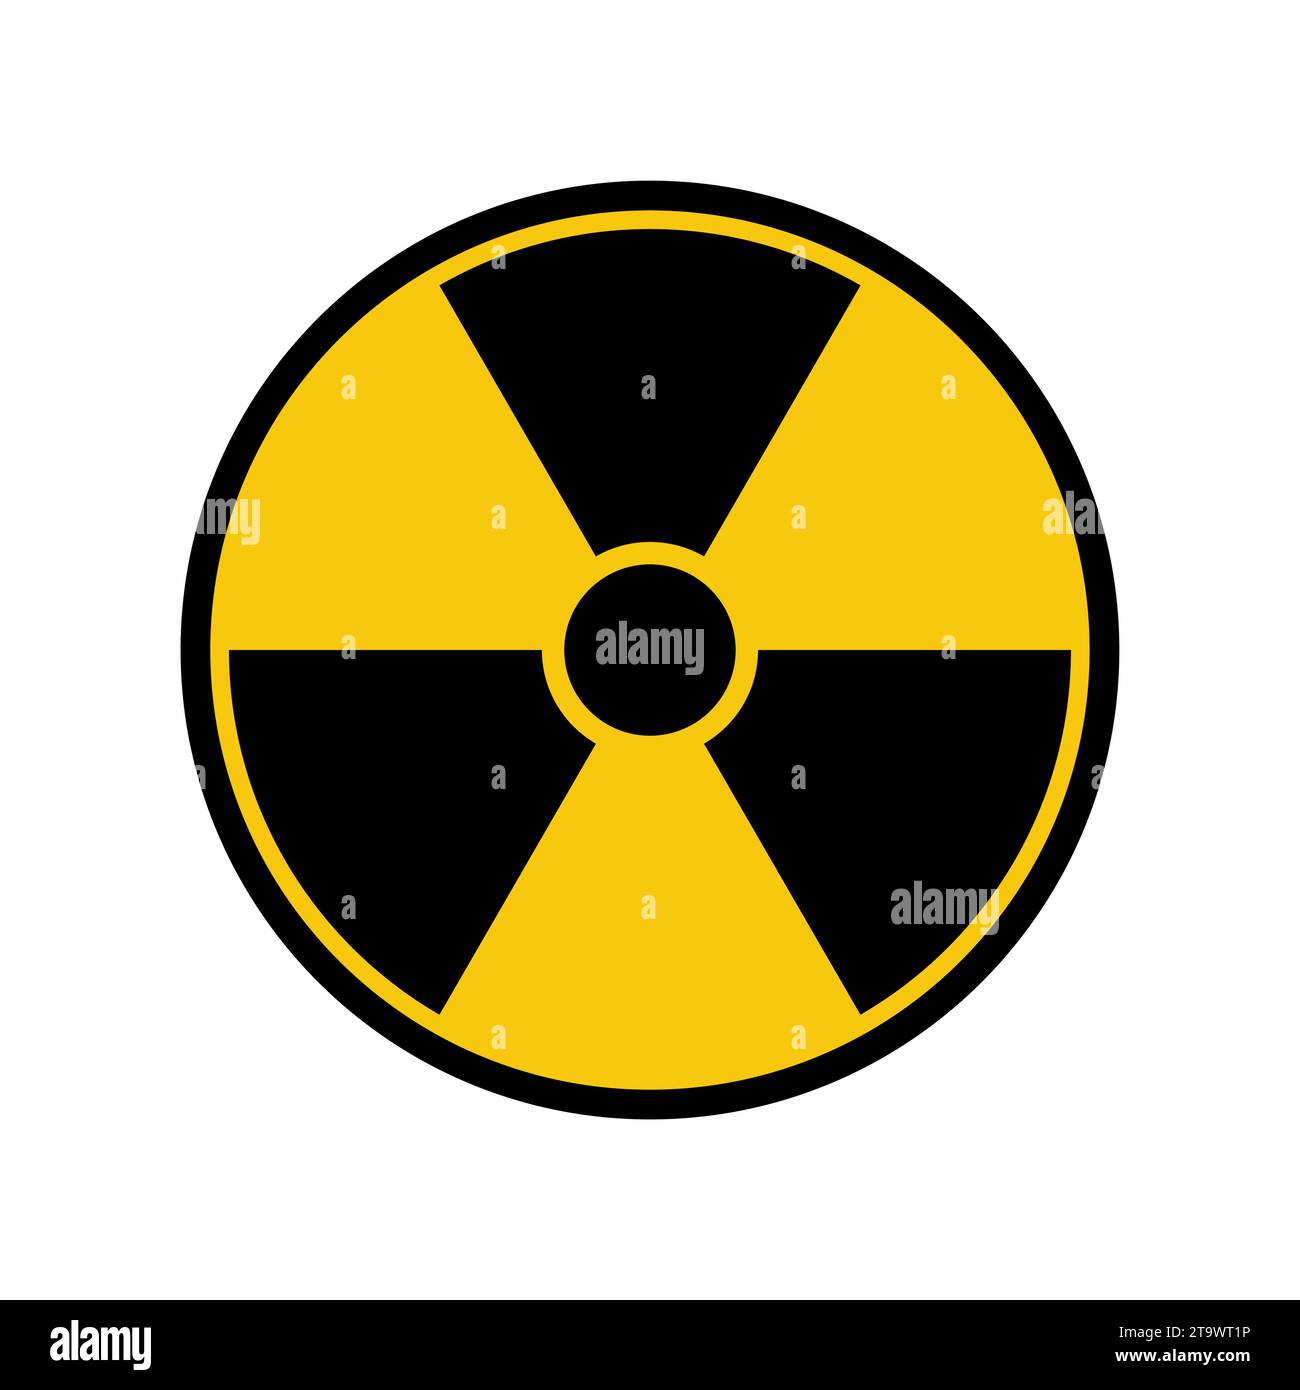 Radiation hazard icon. Radioactive threat alert. Nuclear caution symbol. Vector illustration. Stock Vector